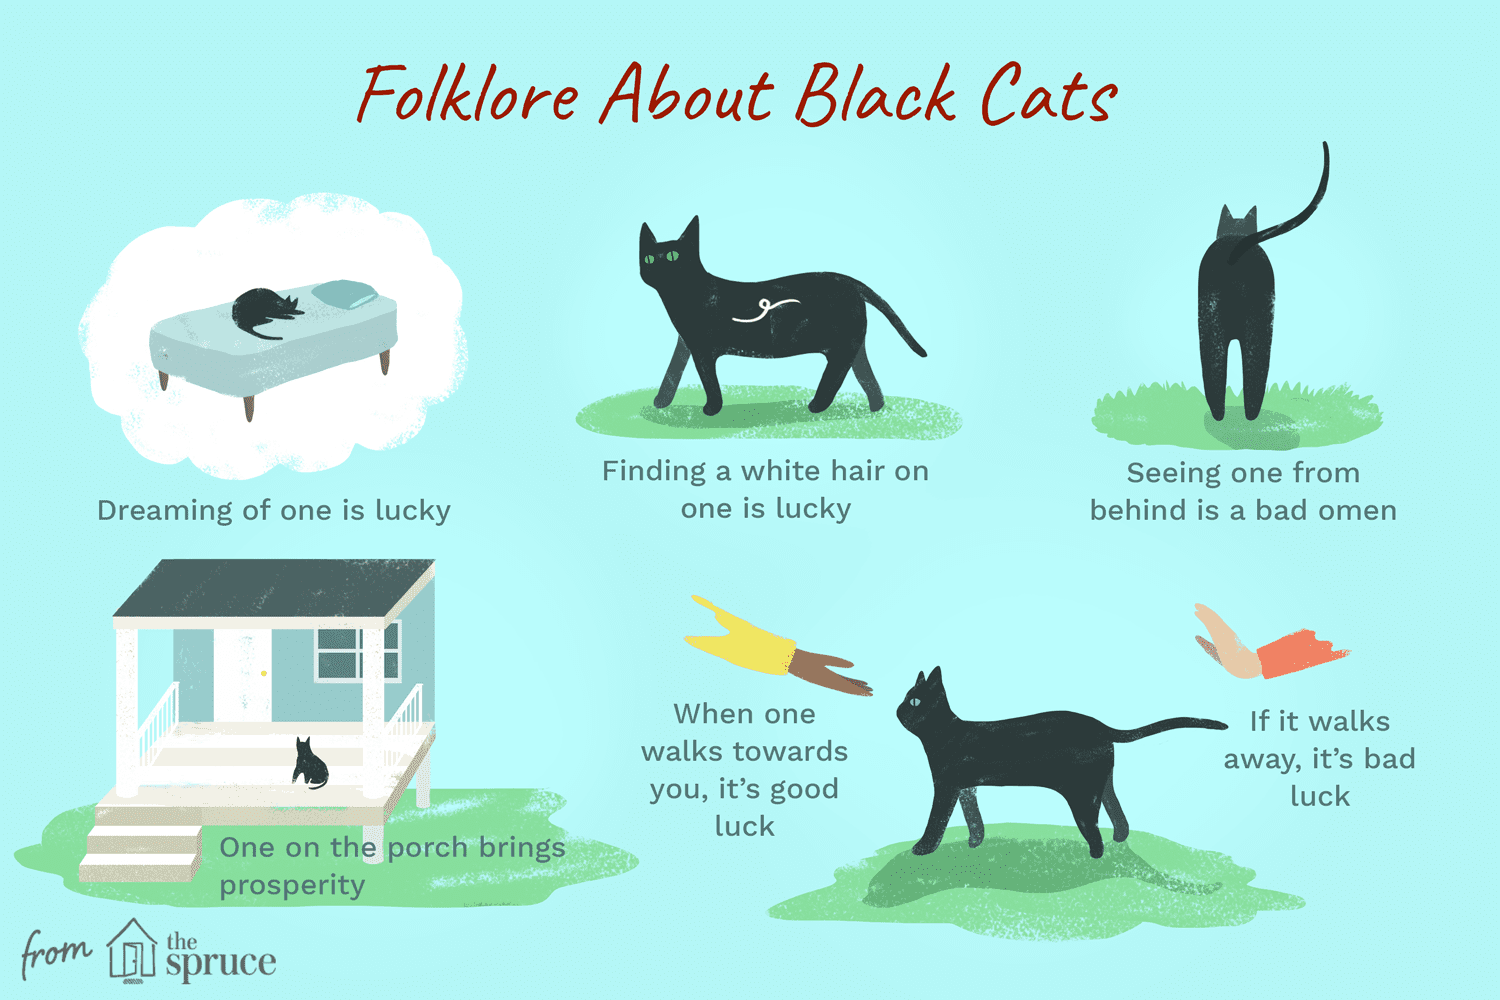 Myter och vidskepelser om svarta katter